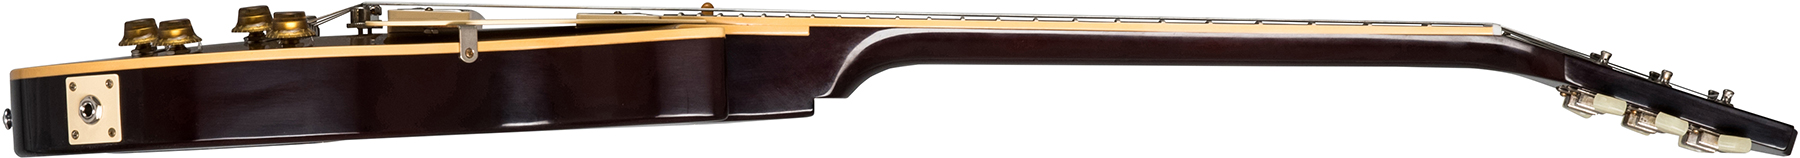 Gibson Custom Shop Les Paul Goldtop 1957 Reissue 2019 2h Ht Rw - Vos Double Gold With Dark Back - Guitare Électrique Single Cut - Variation 2